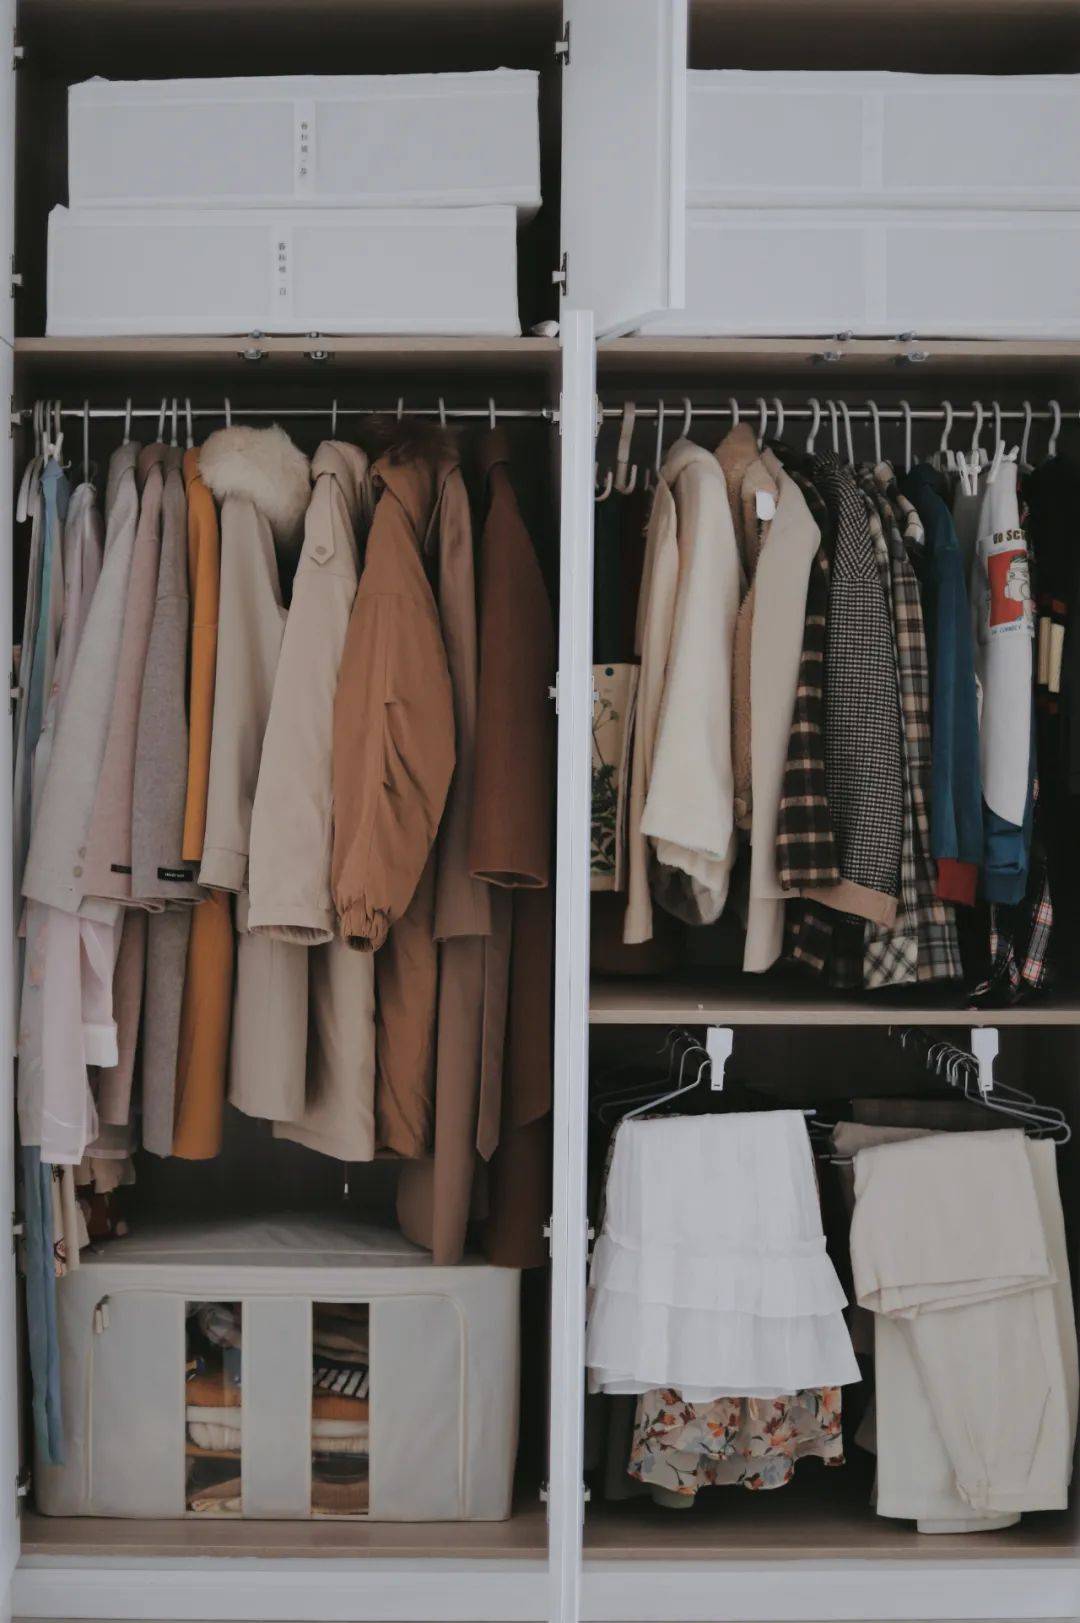 女人挂满衣服的衣柜图片